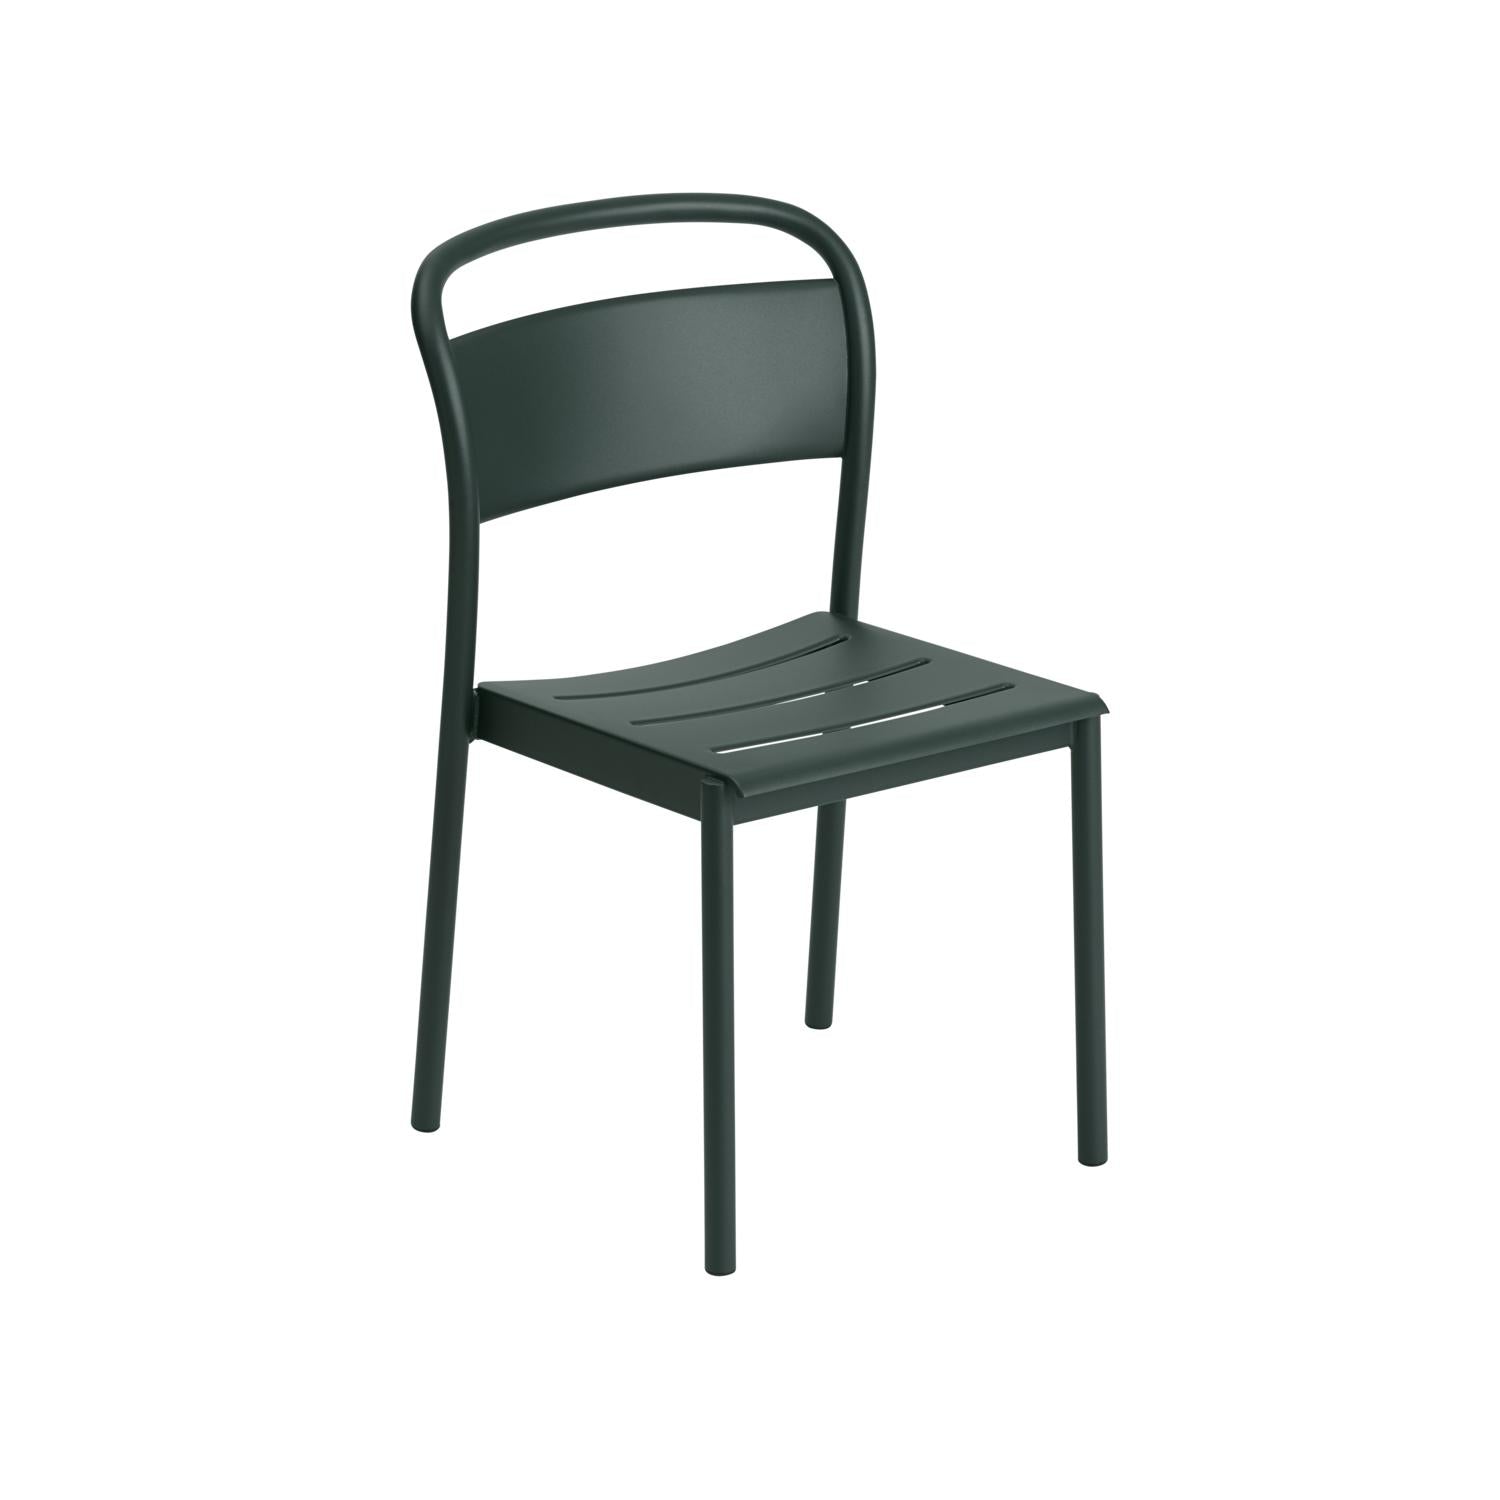 Muuto liniowe stalowe krzesło boczne, ciemnozielone